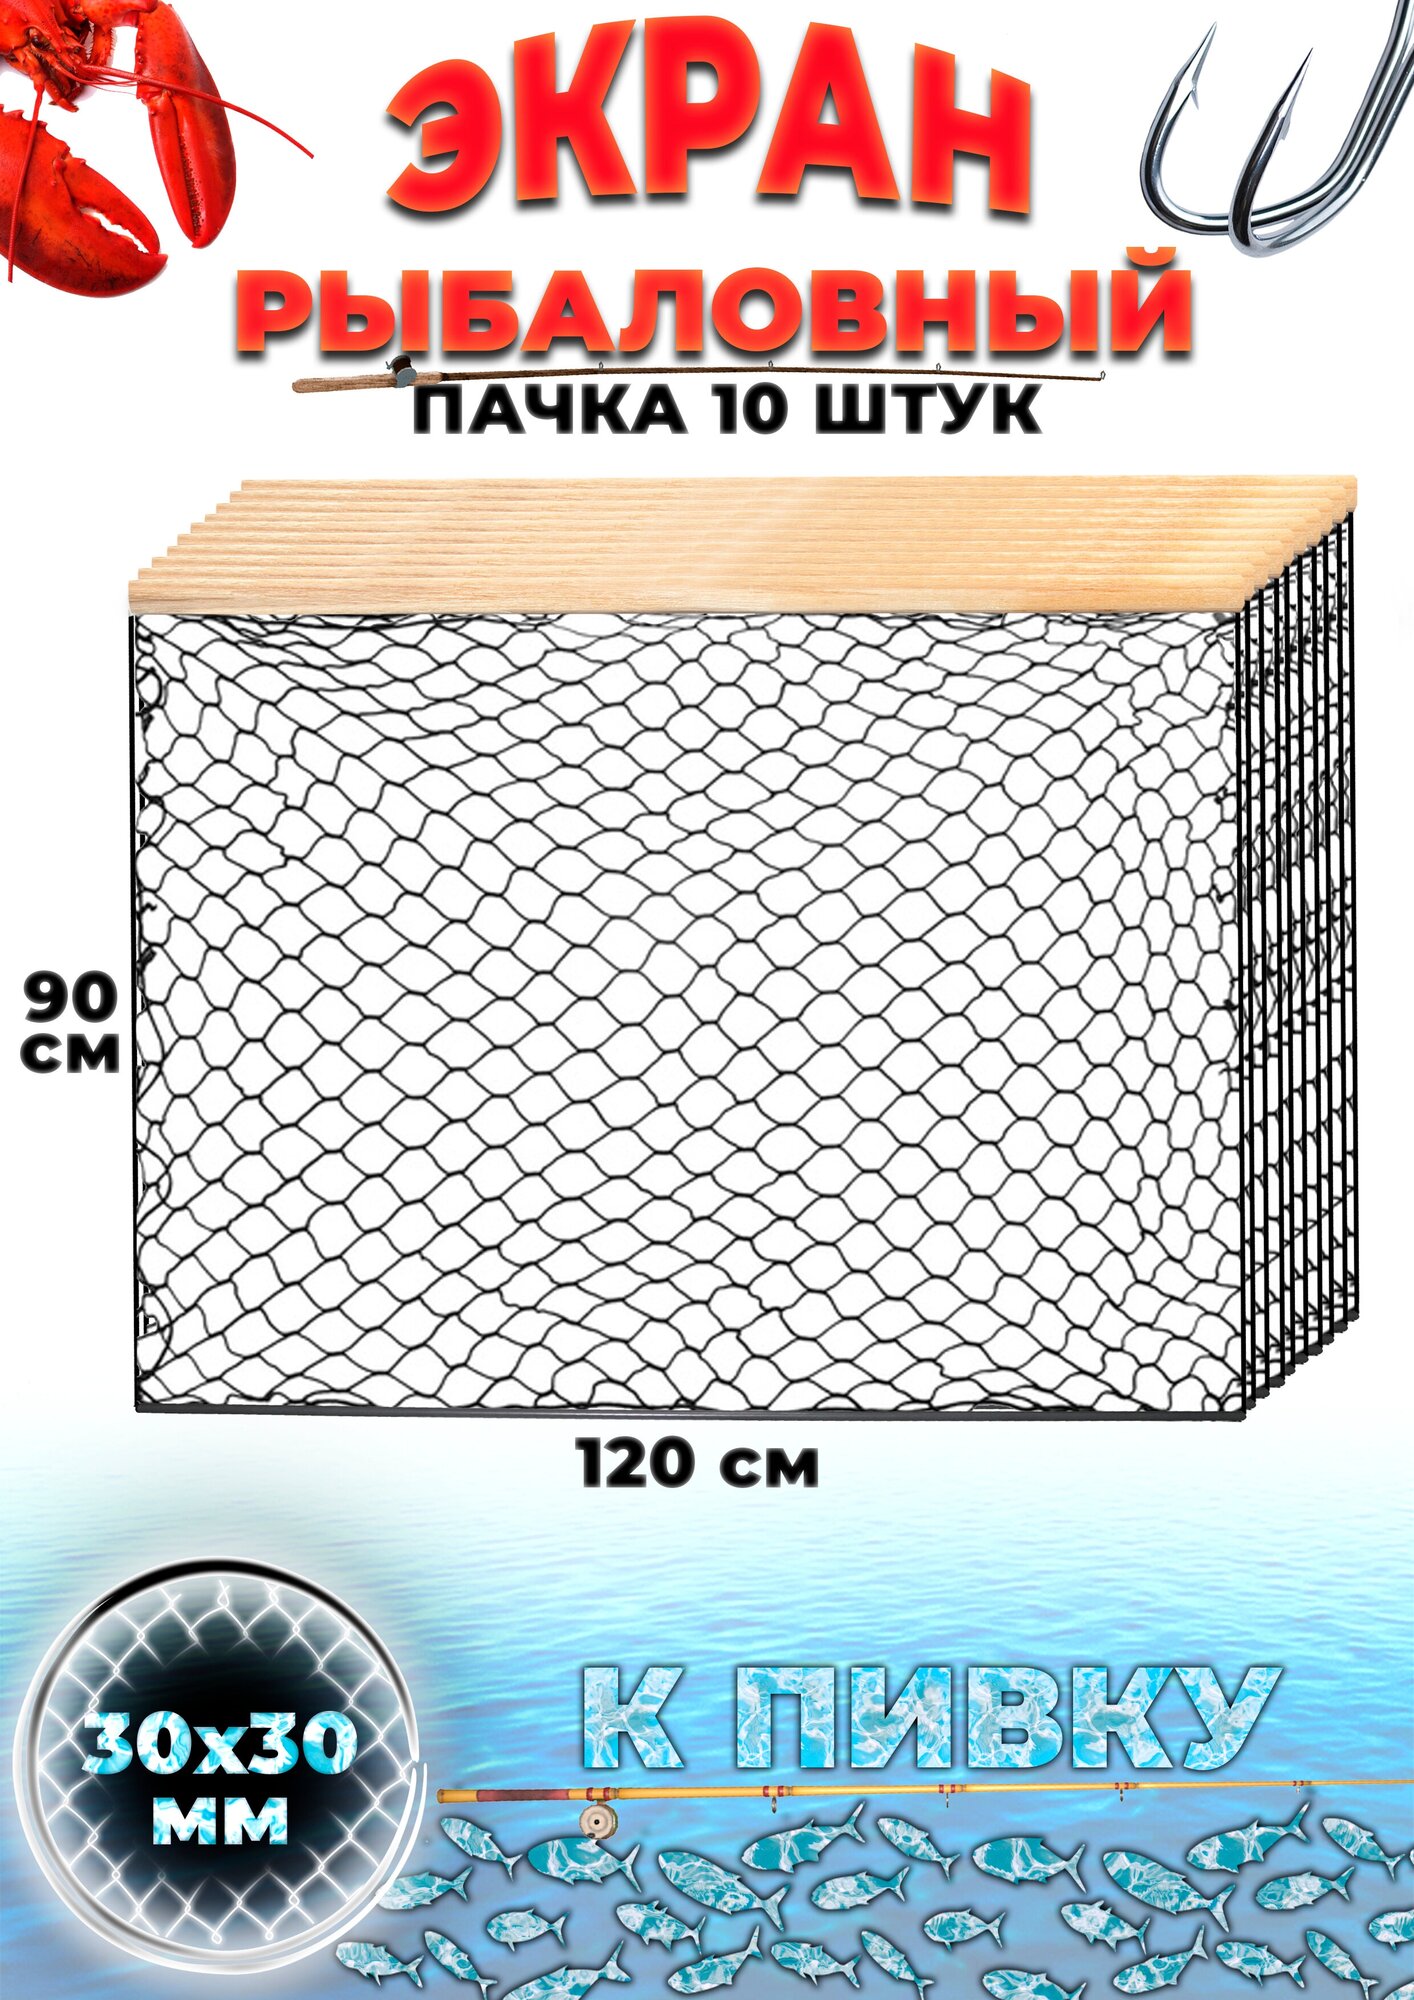 Экран рыболовный защитный оснащенный маскировочный, ячейка 30мм (набор 10 шт.)